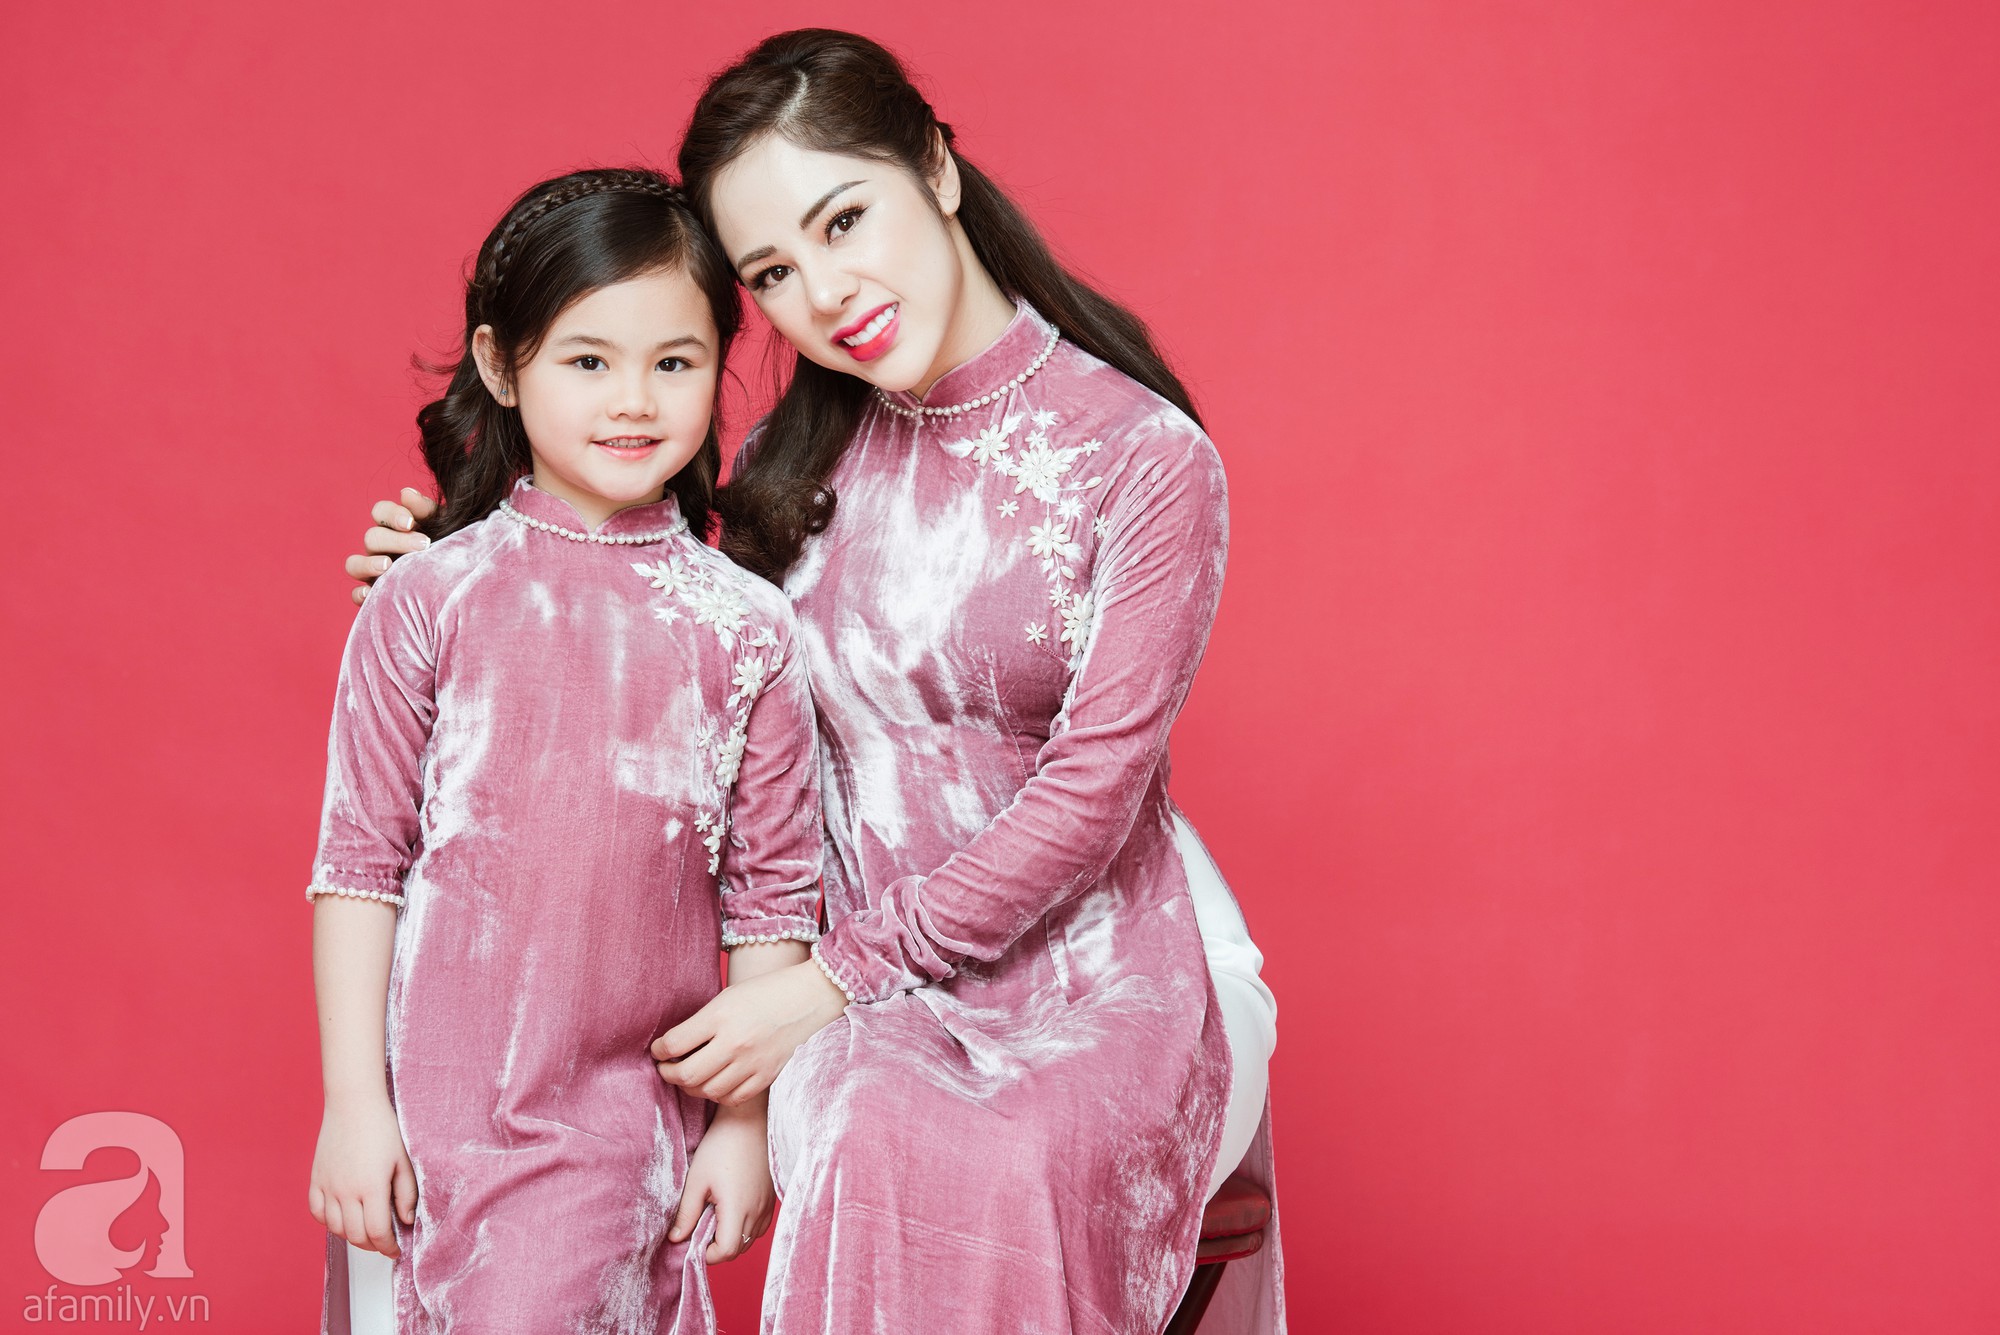 Áo dài cách tân thiết kế mẹ và bé gái thêu hạc trắng trên nền áo nhung đỏ